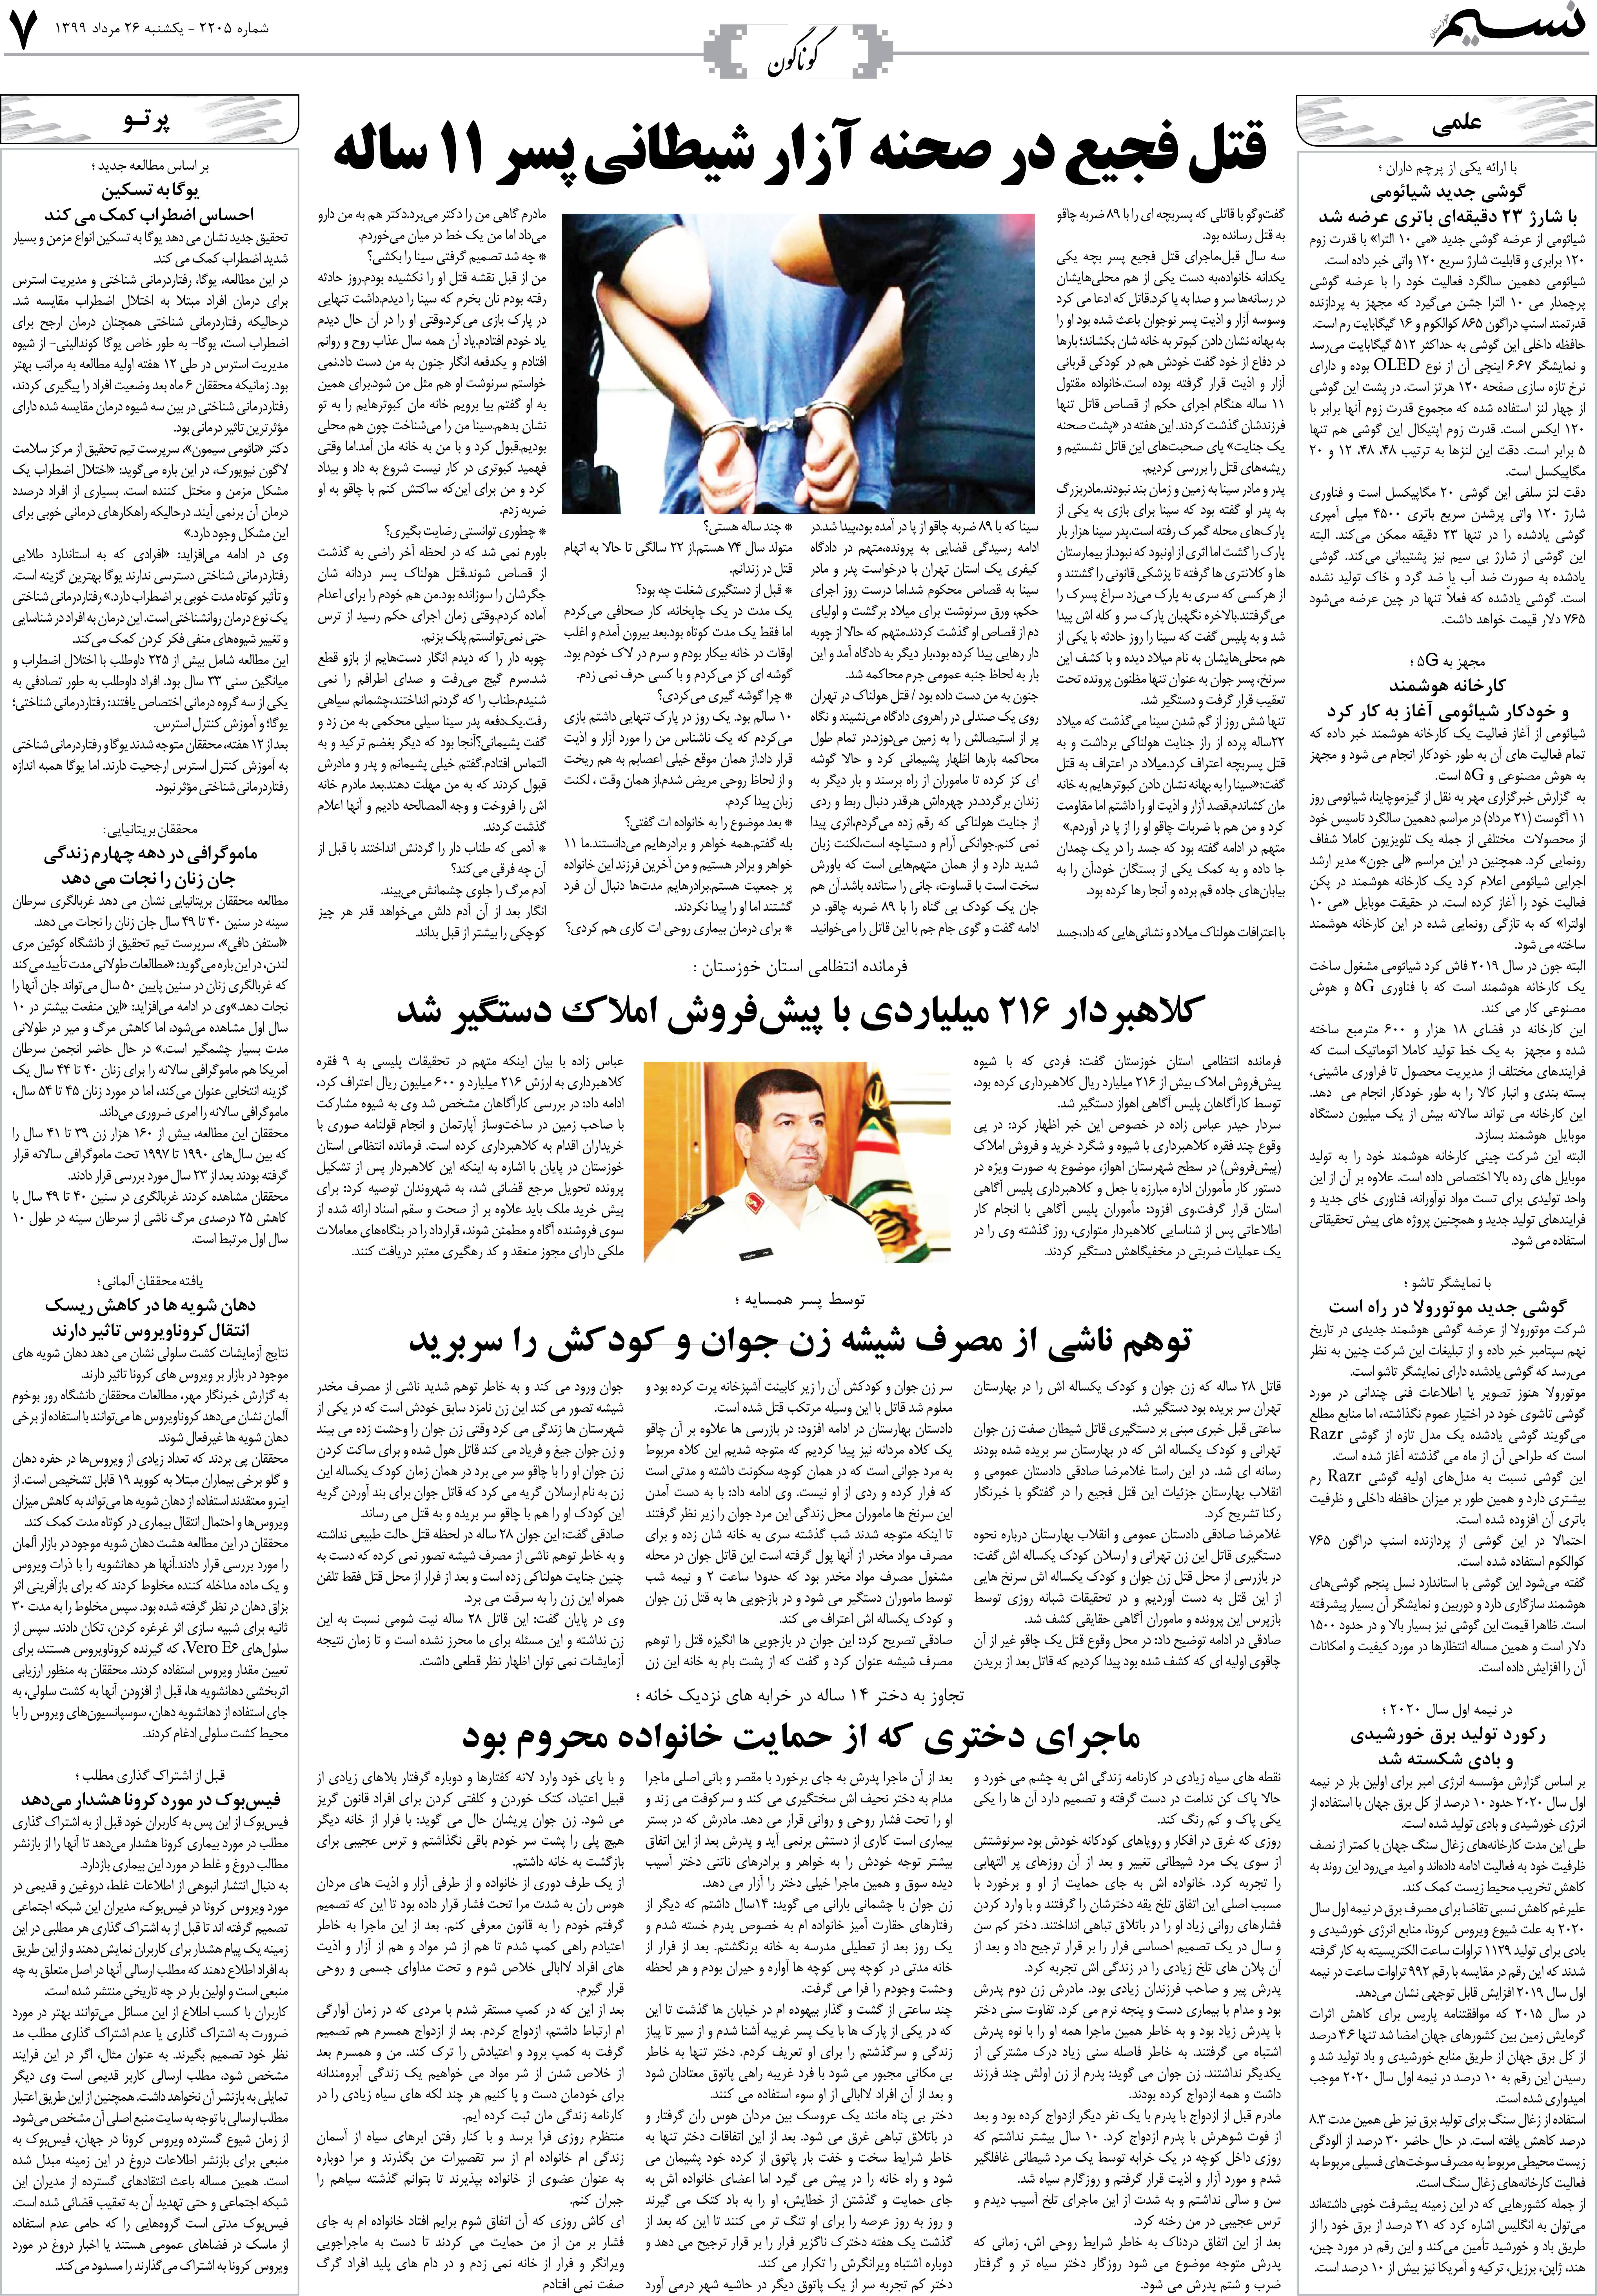 صفحه گوناگون روزنامه نسیم شماره 2205